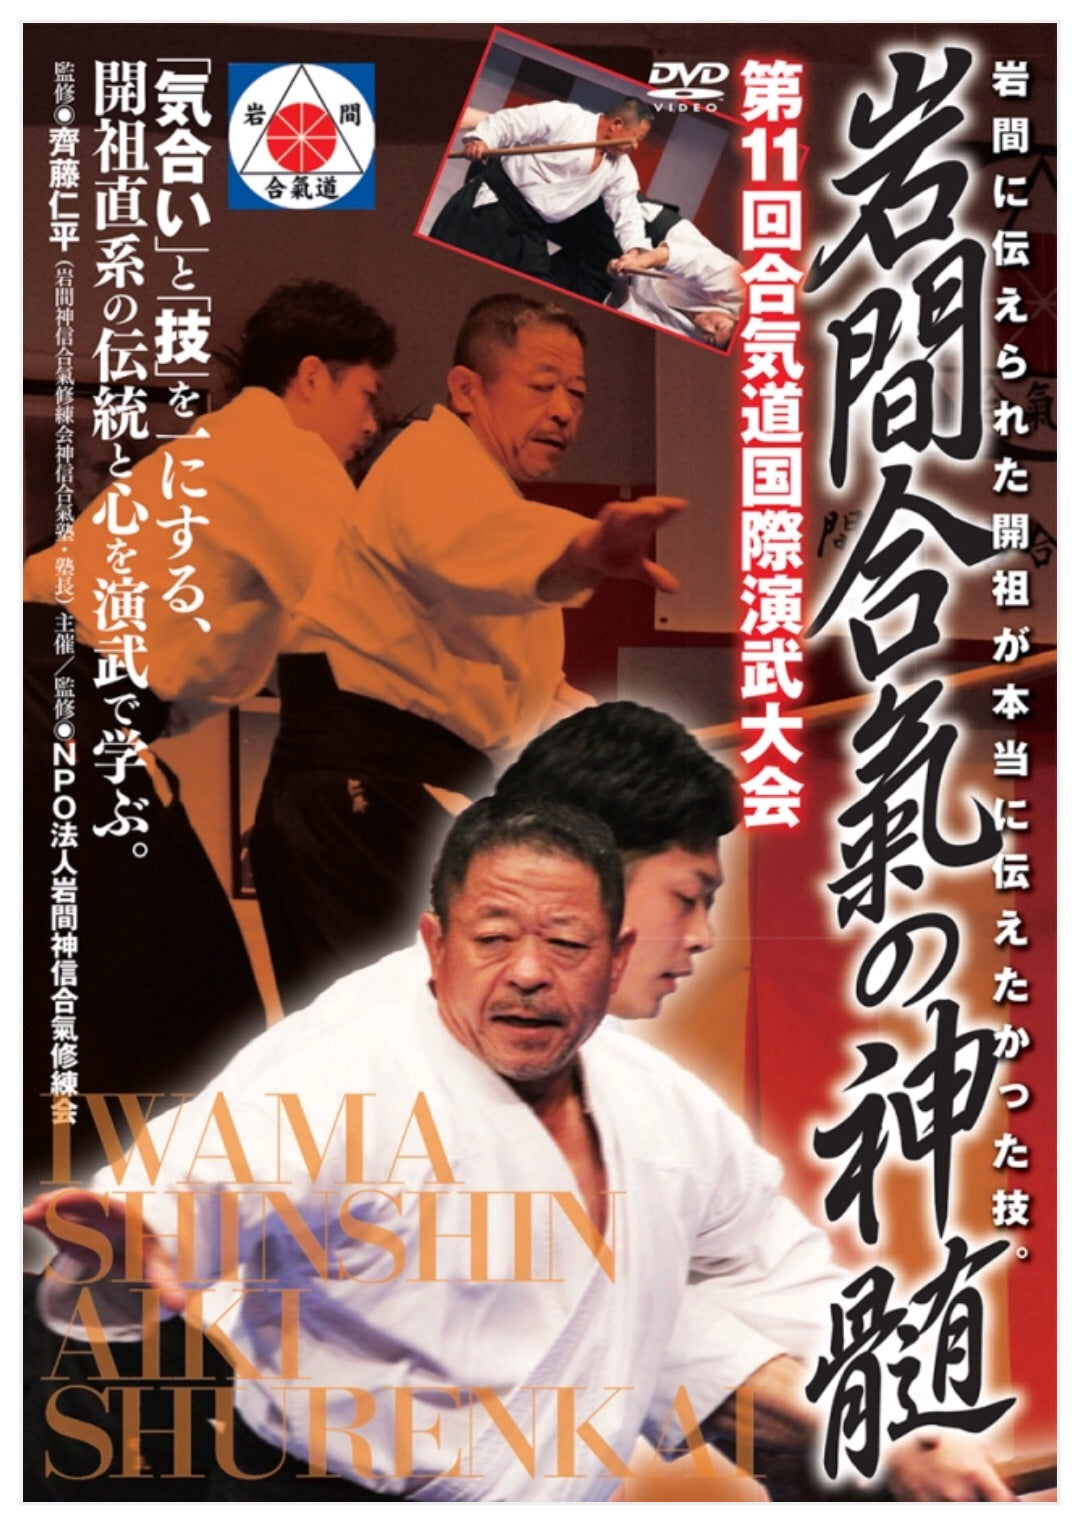 Iwama Shinshin Aiki Shurenkai DVD by Hitohiro Saito - Budovideos Inc